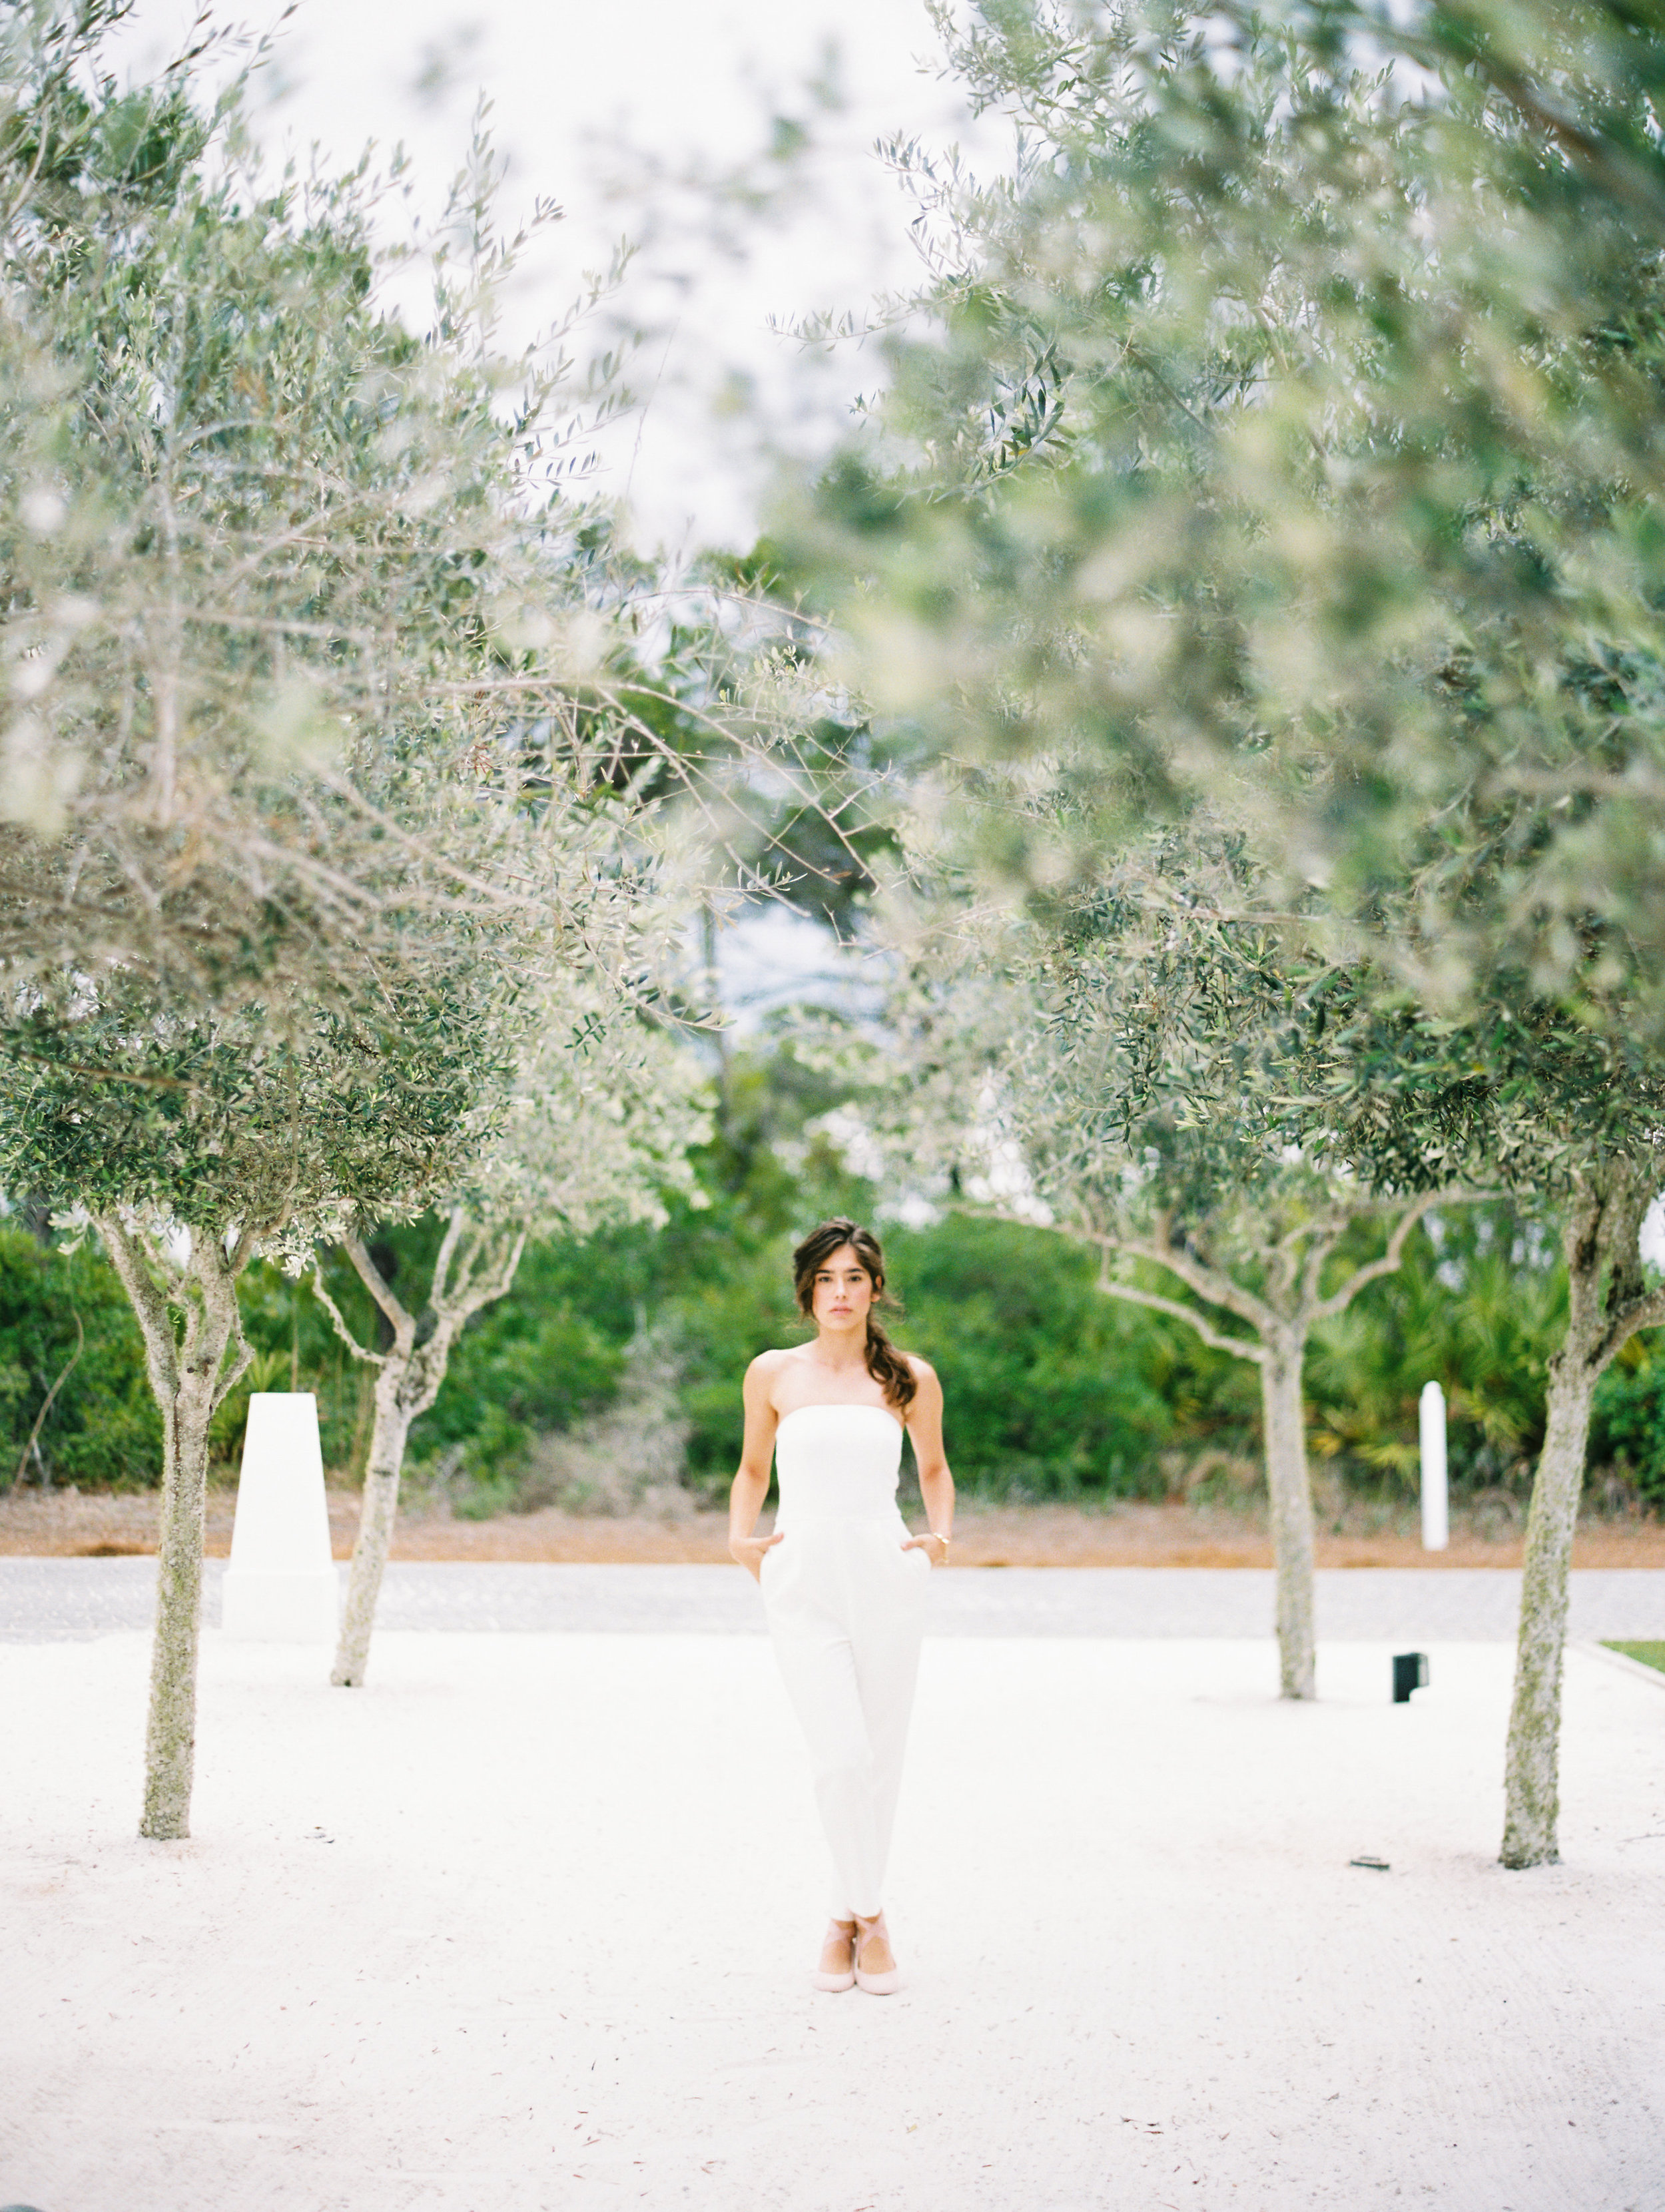 LaurenKinsey-JessicaSloane-JessicaZimmerman-GreeceWeddingPhotographer-Unearthing.tc-12.JPG